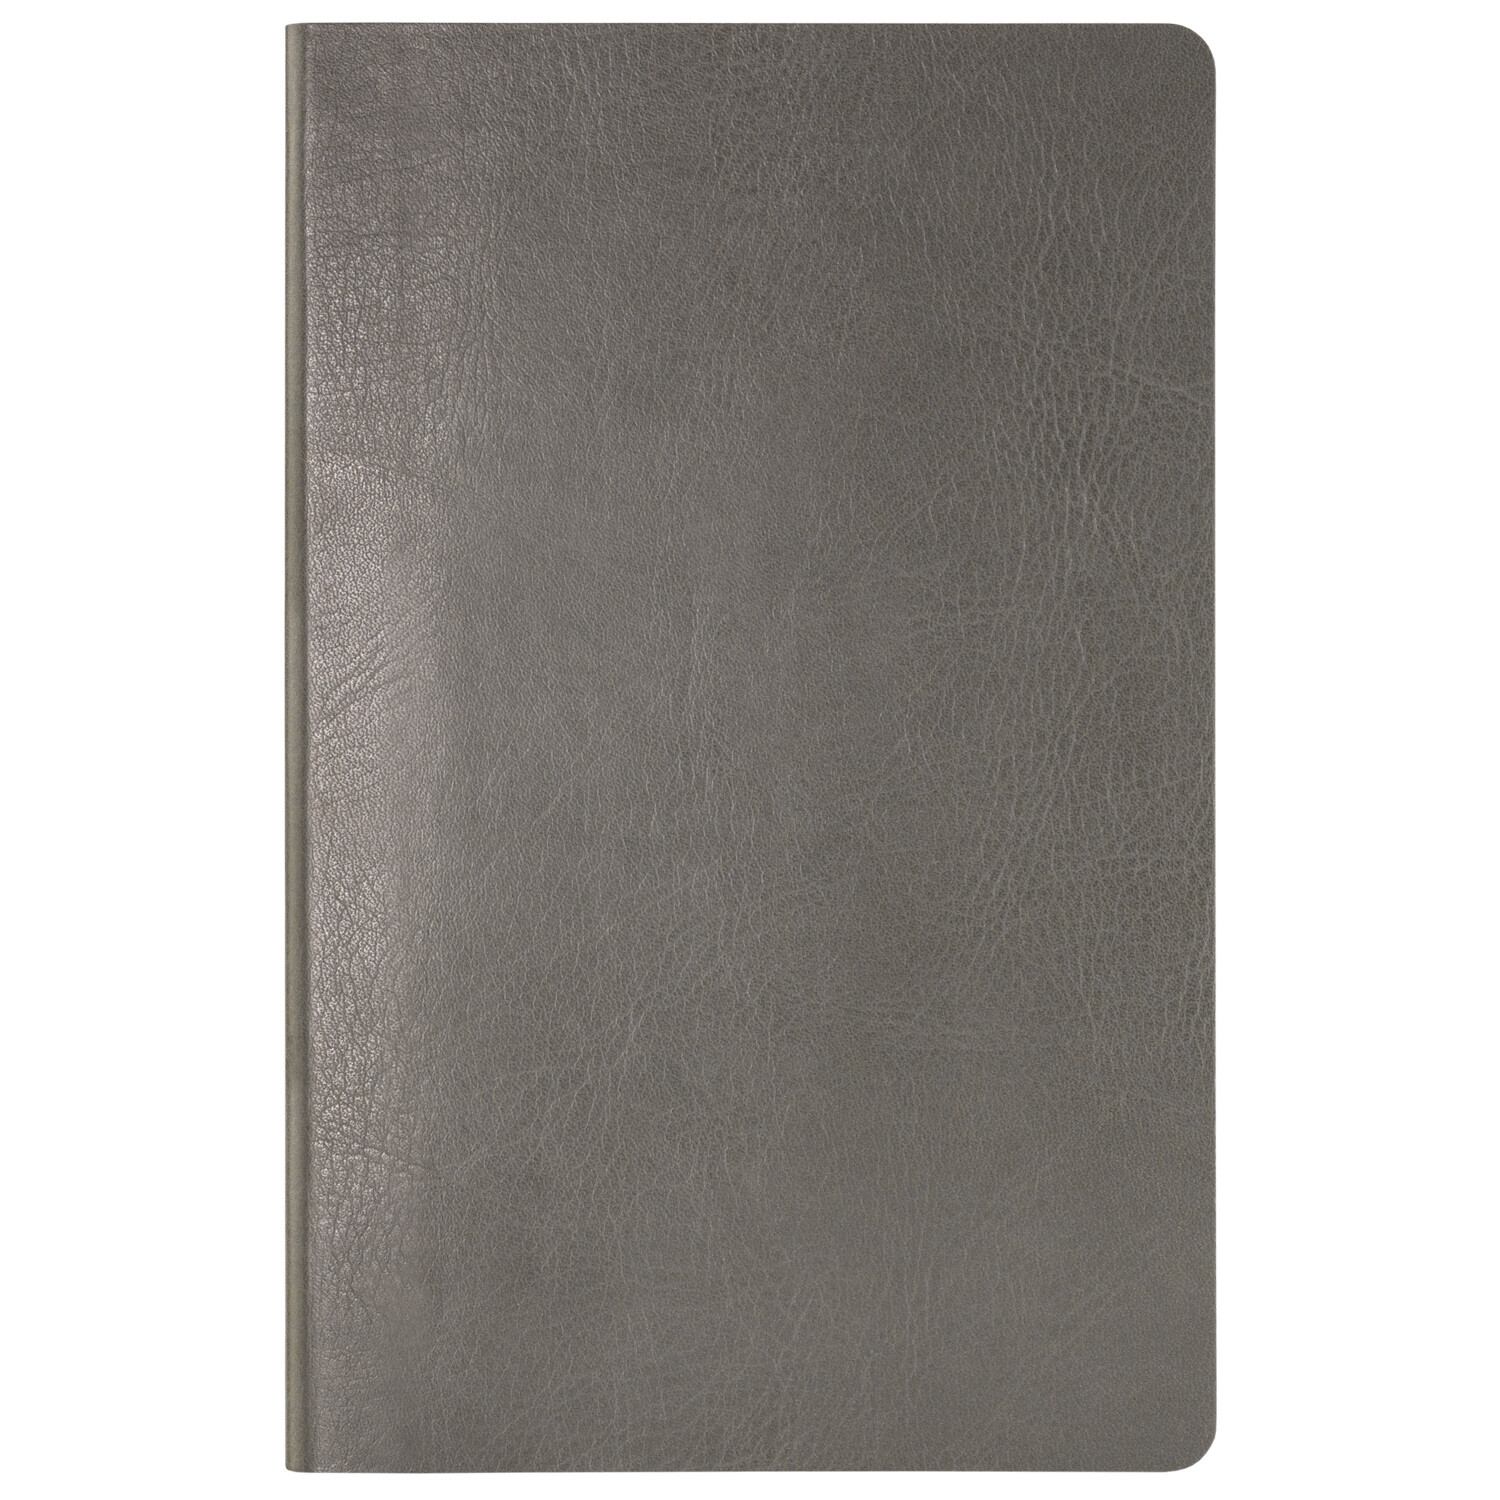 Ежедневник Slimbook Shia New недатированный без печати, серый (Sketchbook)